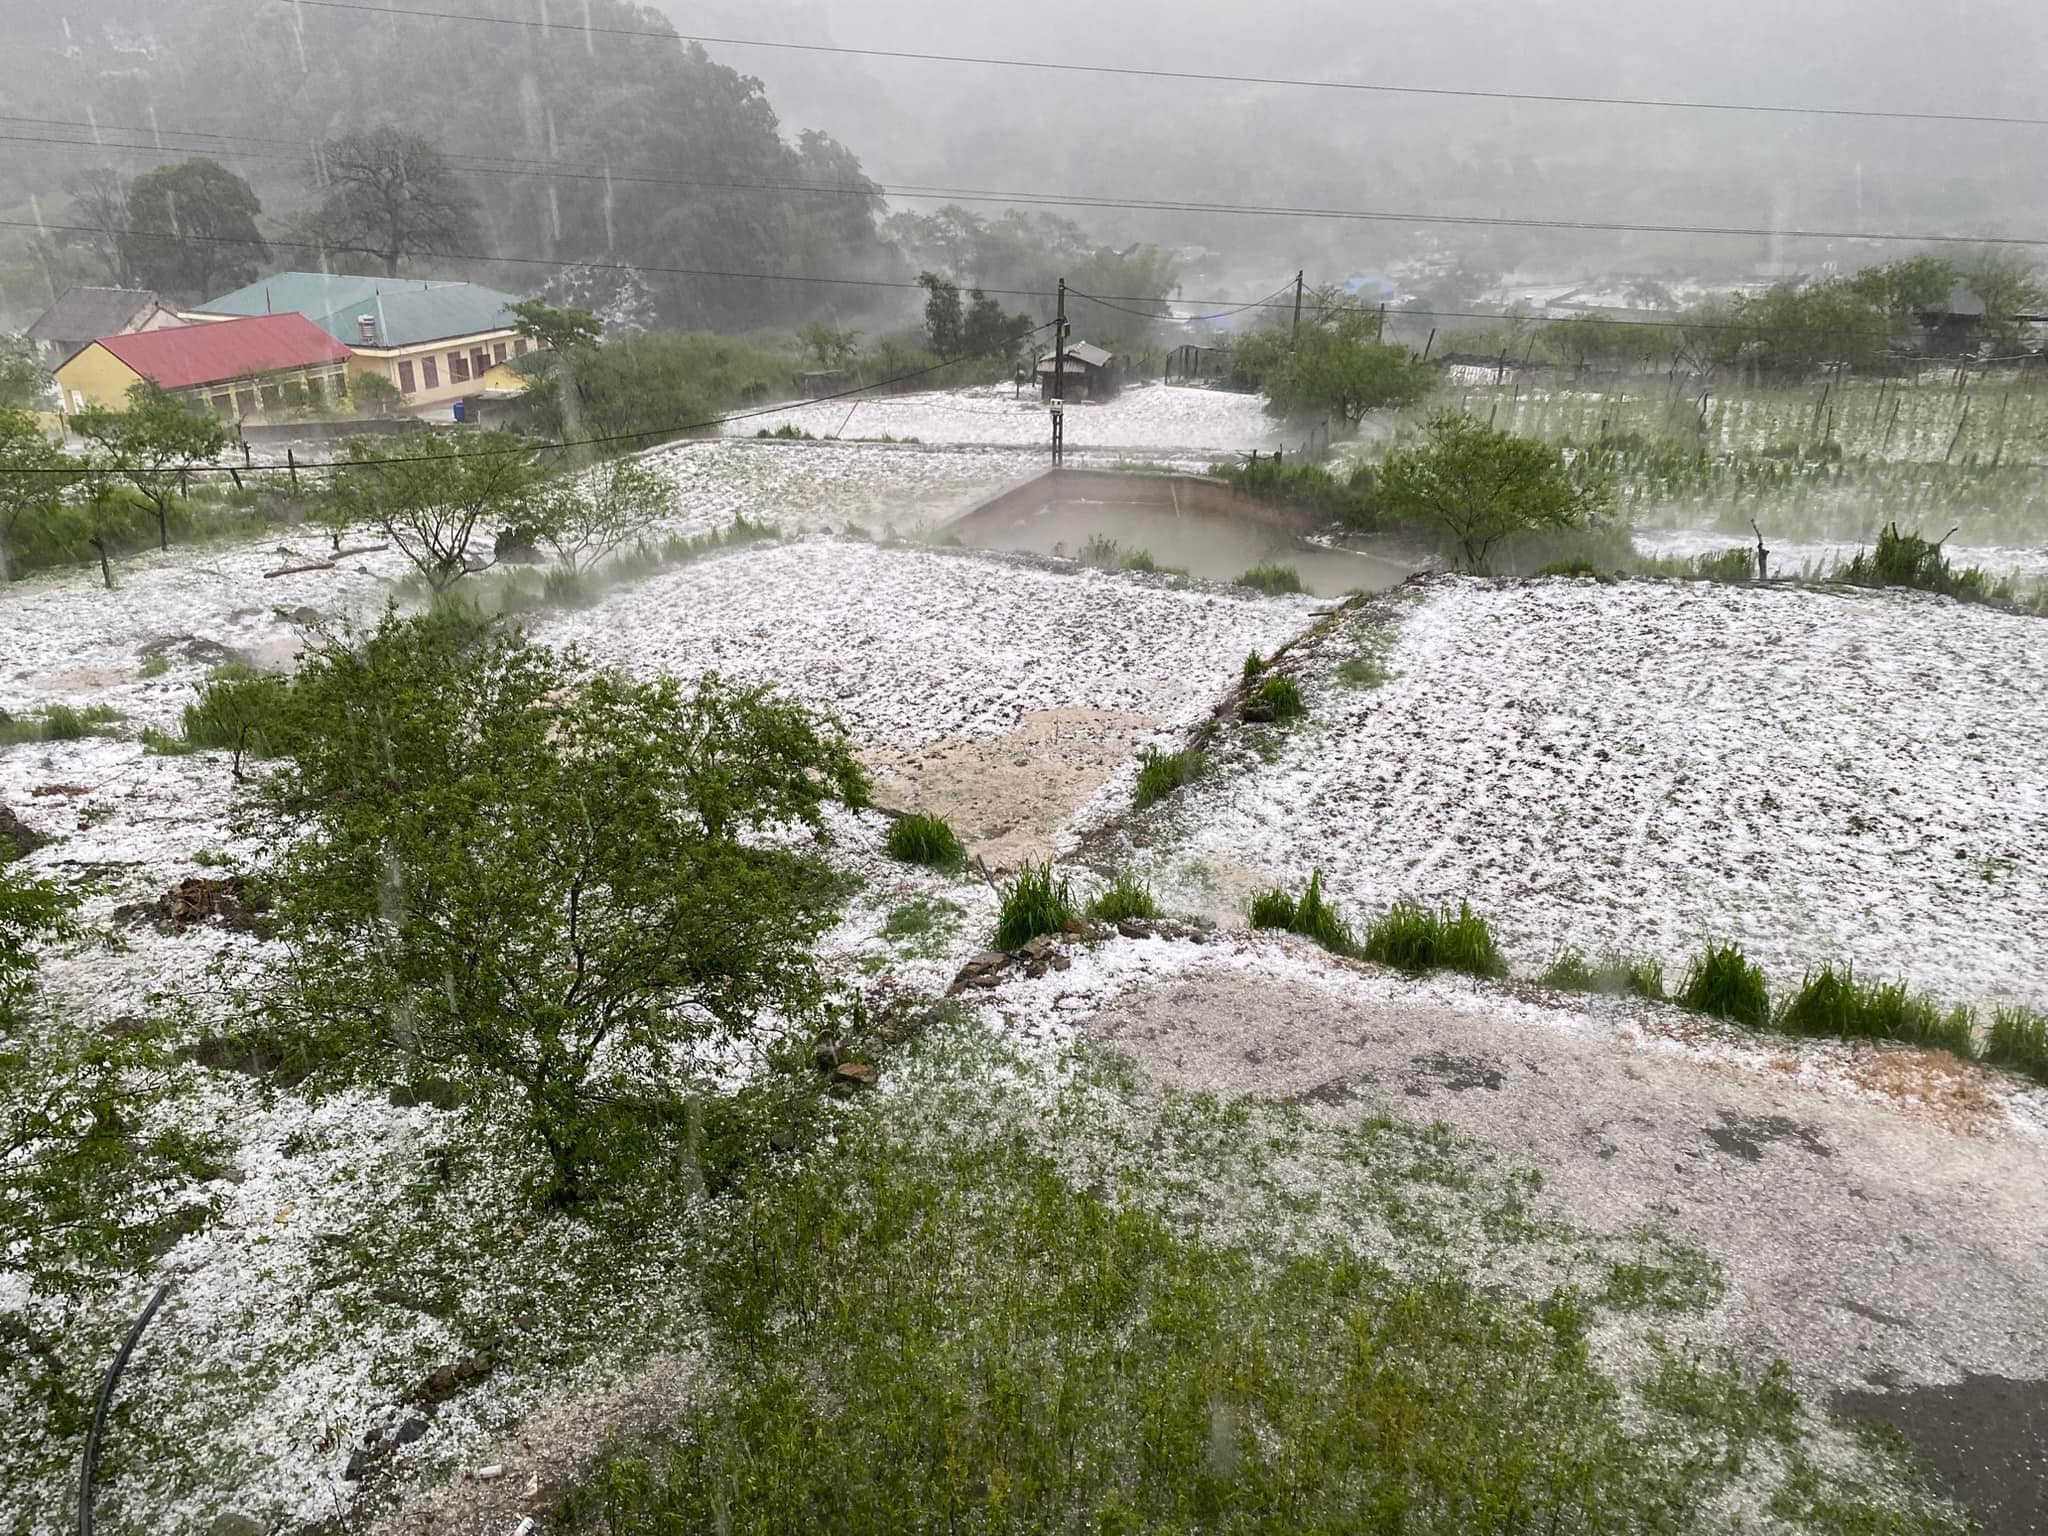 Khoảng 16h chiều nay (24/4), tại địa bàn huyện Vân Hồ (Sơn La) đã xảy ra một trận mưa đá đặc biệt lớn. Ảnh: Tin tức Sơn La